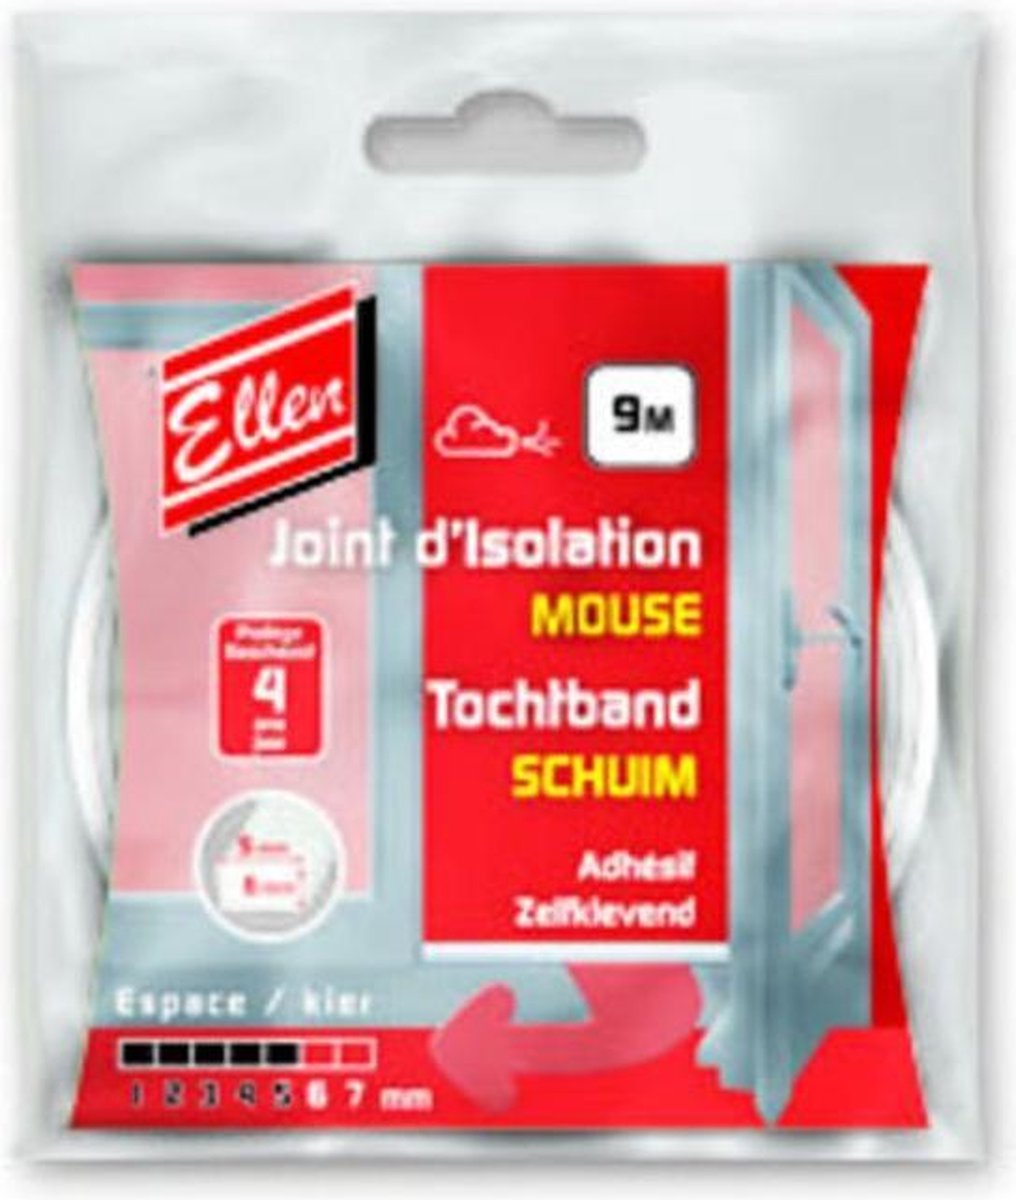 Ellen Tochtband Schuim - 9 x 6 mm